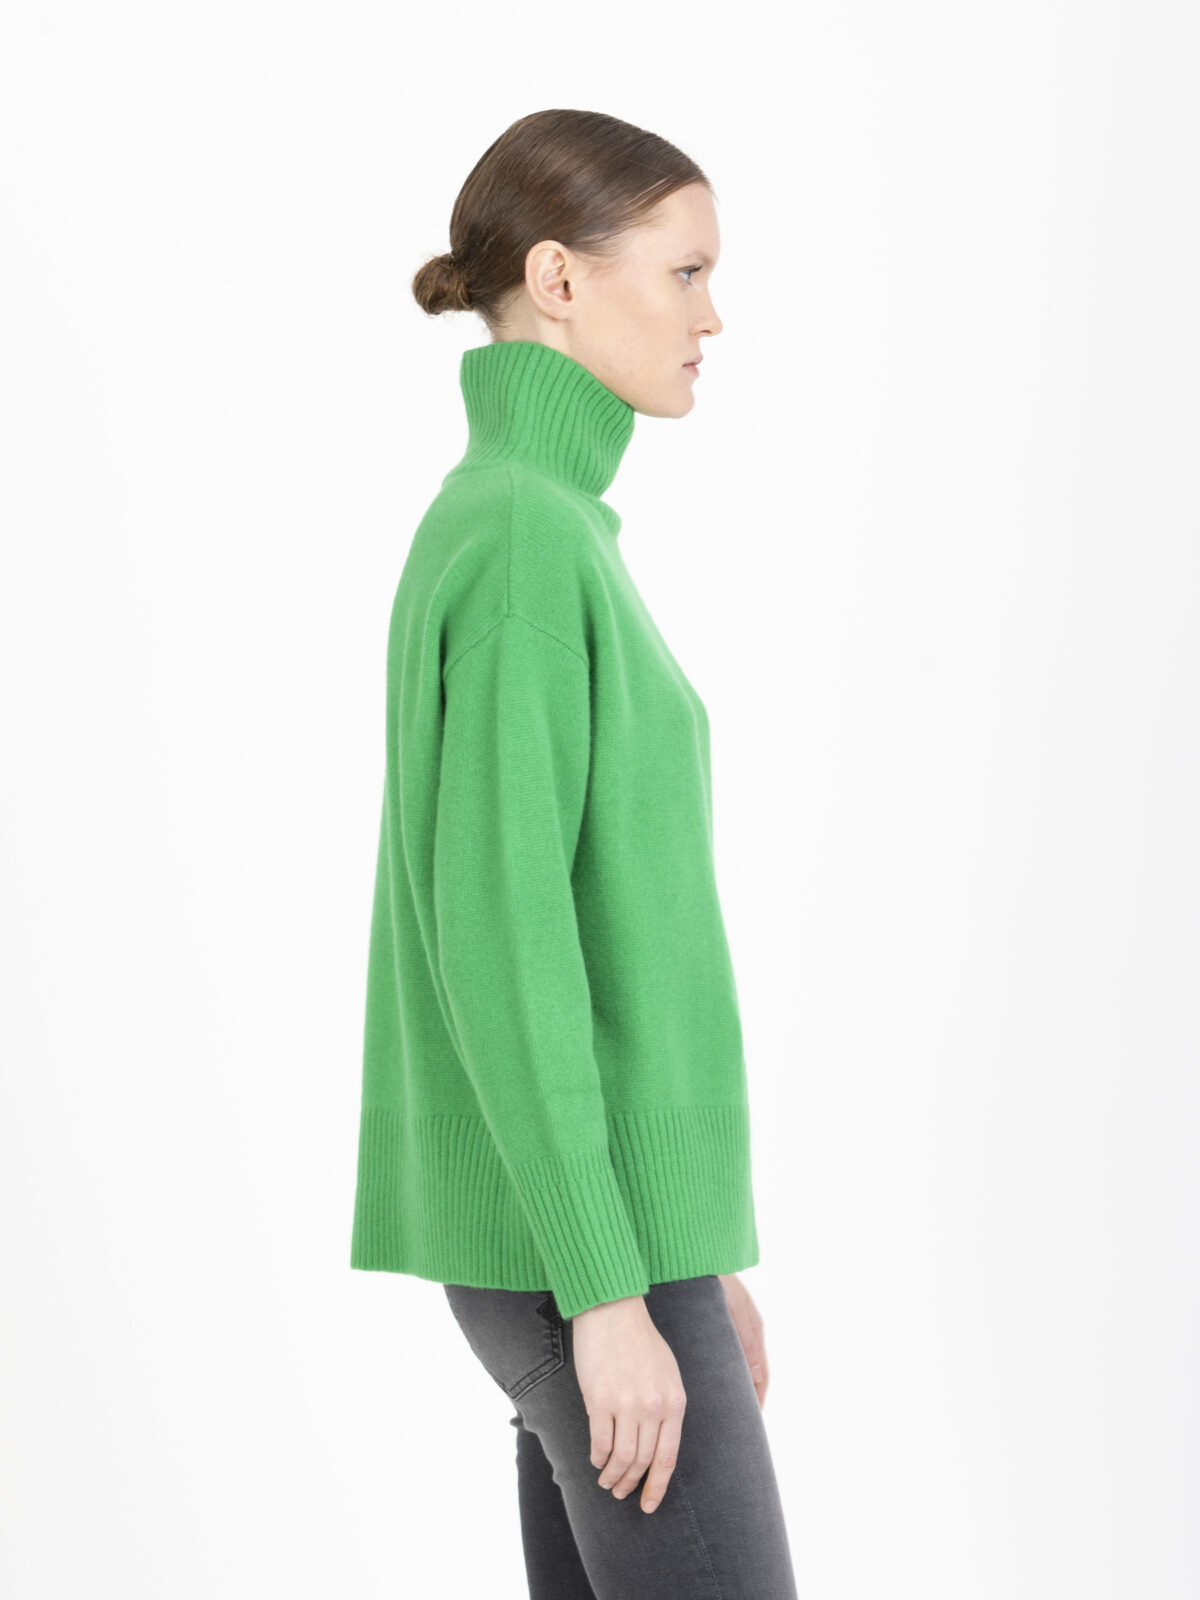 palace-green-turtleneck-sweater-wool-oversized-suncoo-matchboxathens